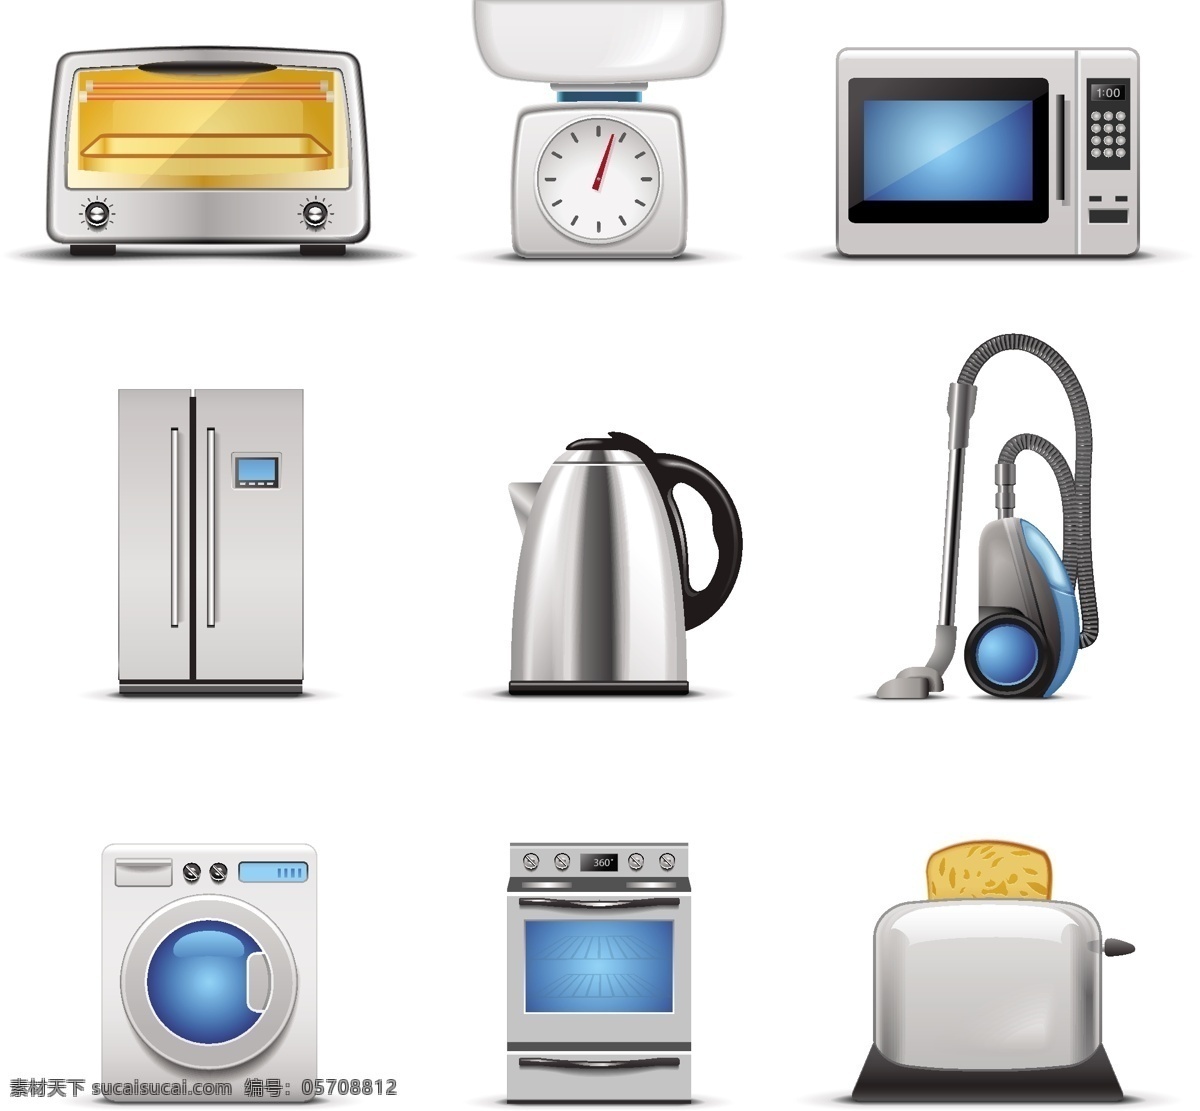 家用电器 icon ui设计 冰箱 厨房 烤箱 水壶 图标 微波炉 吸尘器 洗衣机 烤面包机 矢量图 其他矢量图